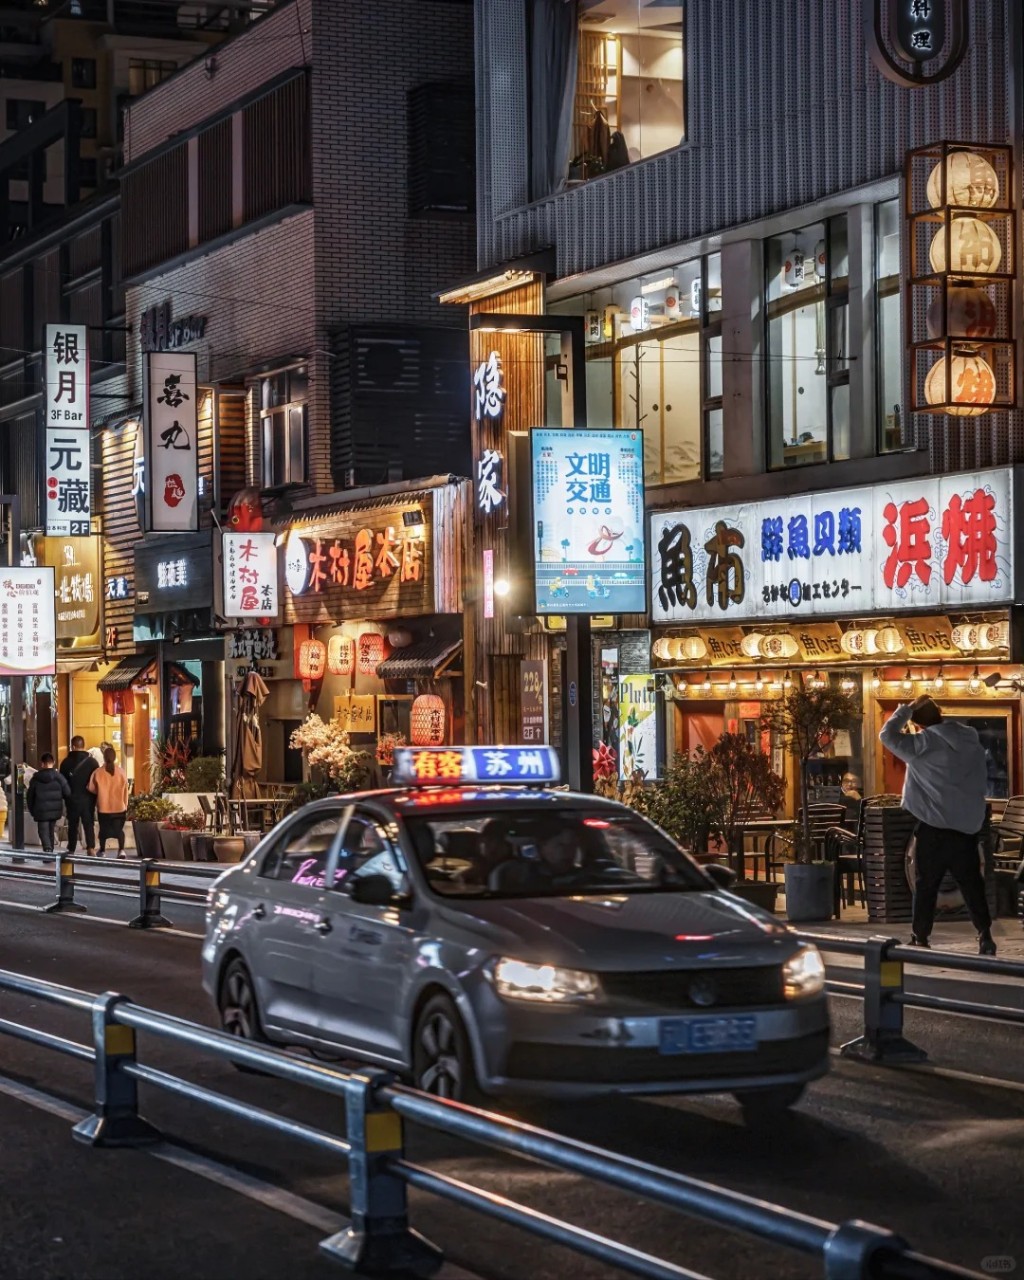 苏州淮海街是当地知名的日本文化街。小红书